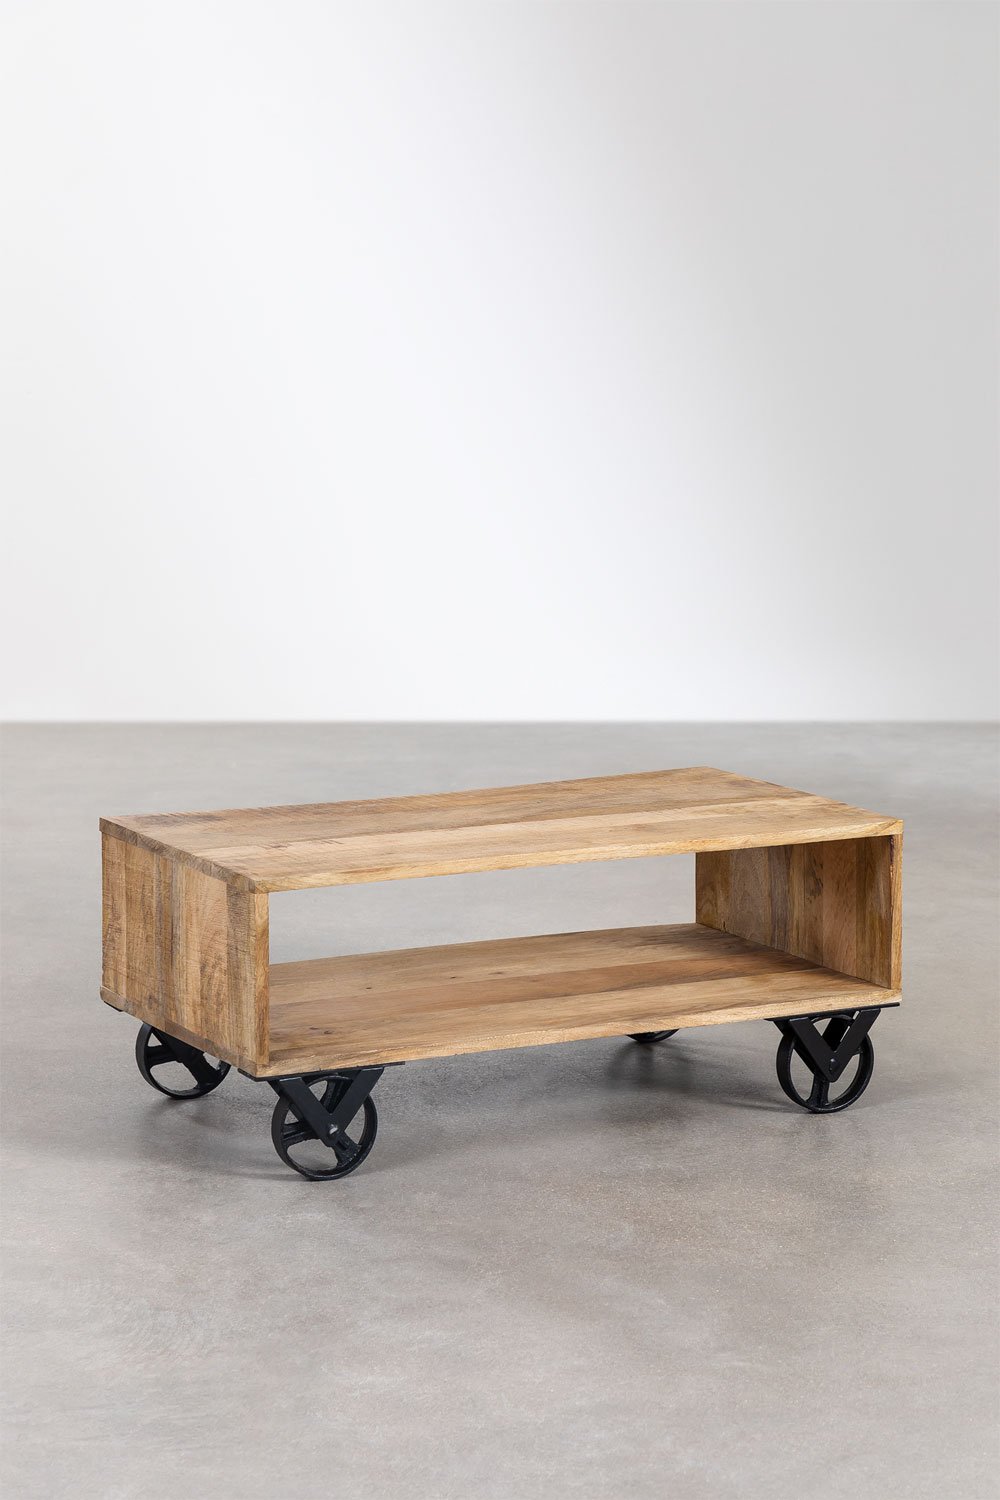 Mangohouten salontafel met Olson wielen , galerij beeld 1